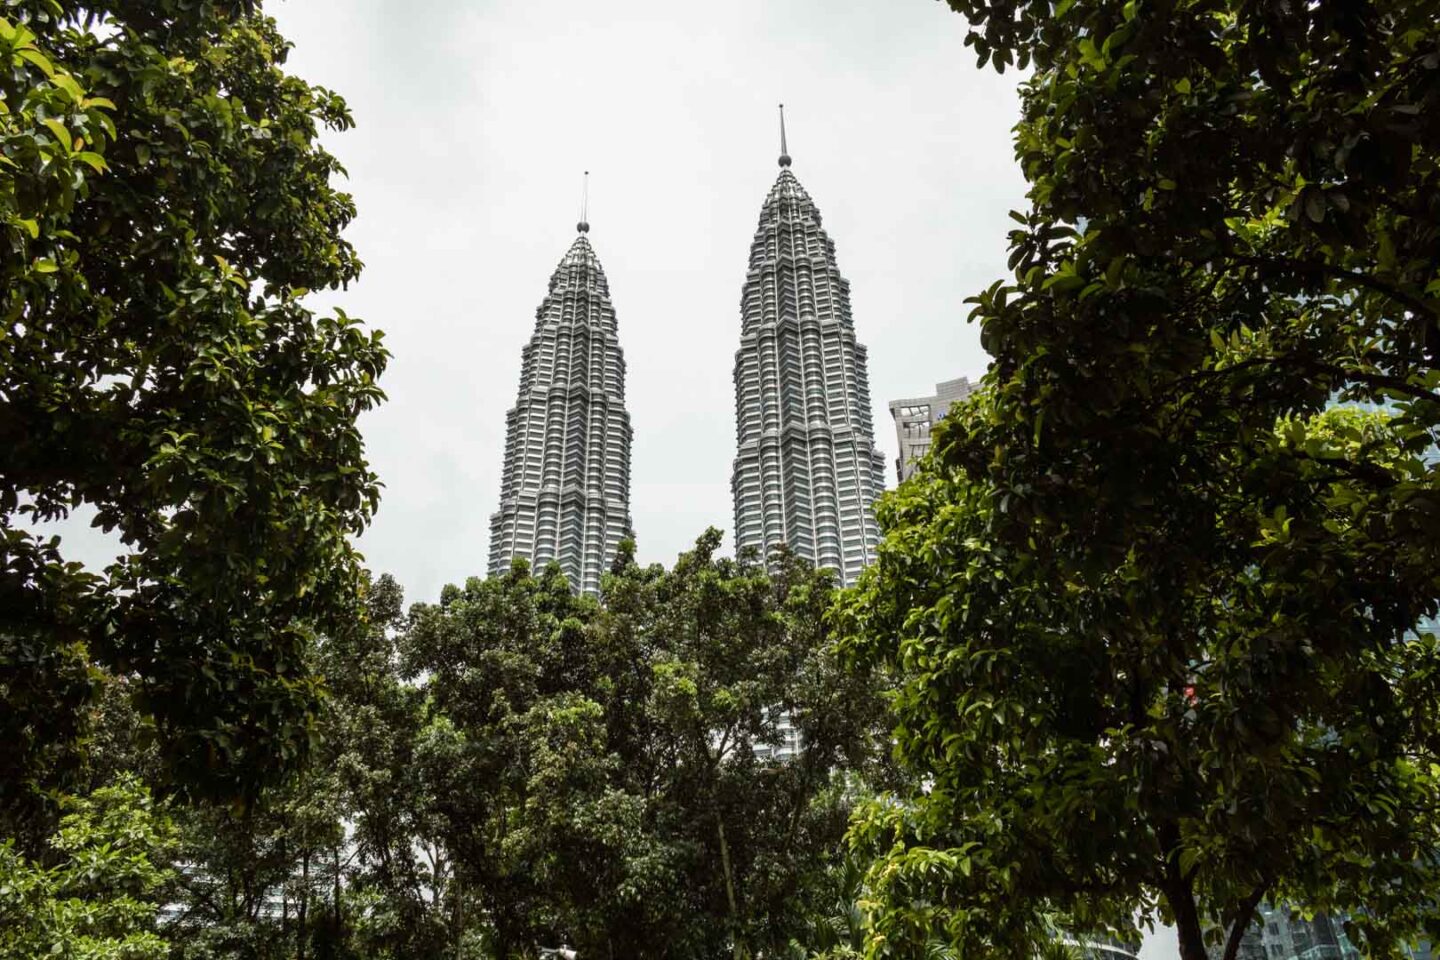 Petronas Towers in Malaysia